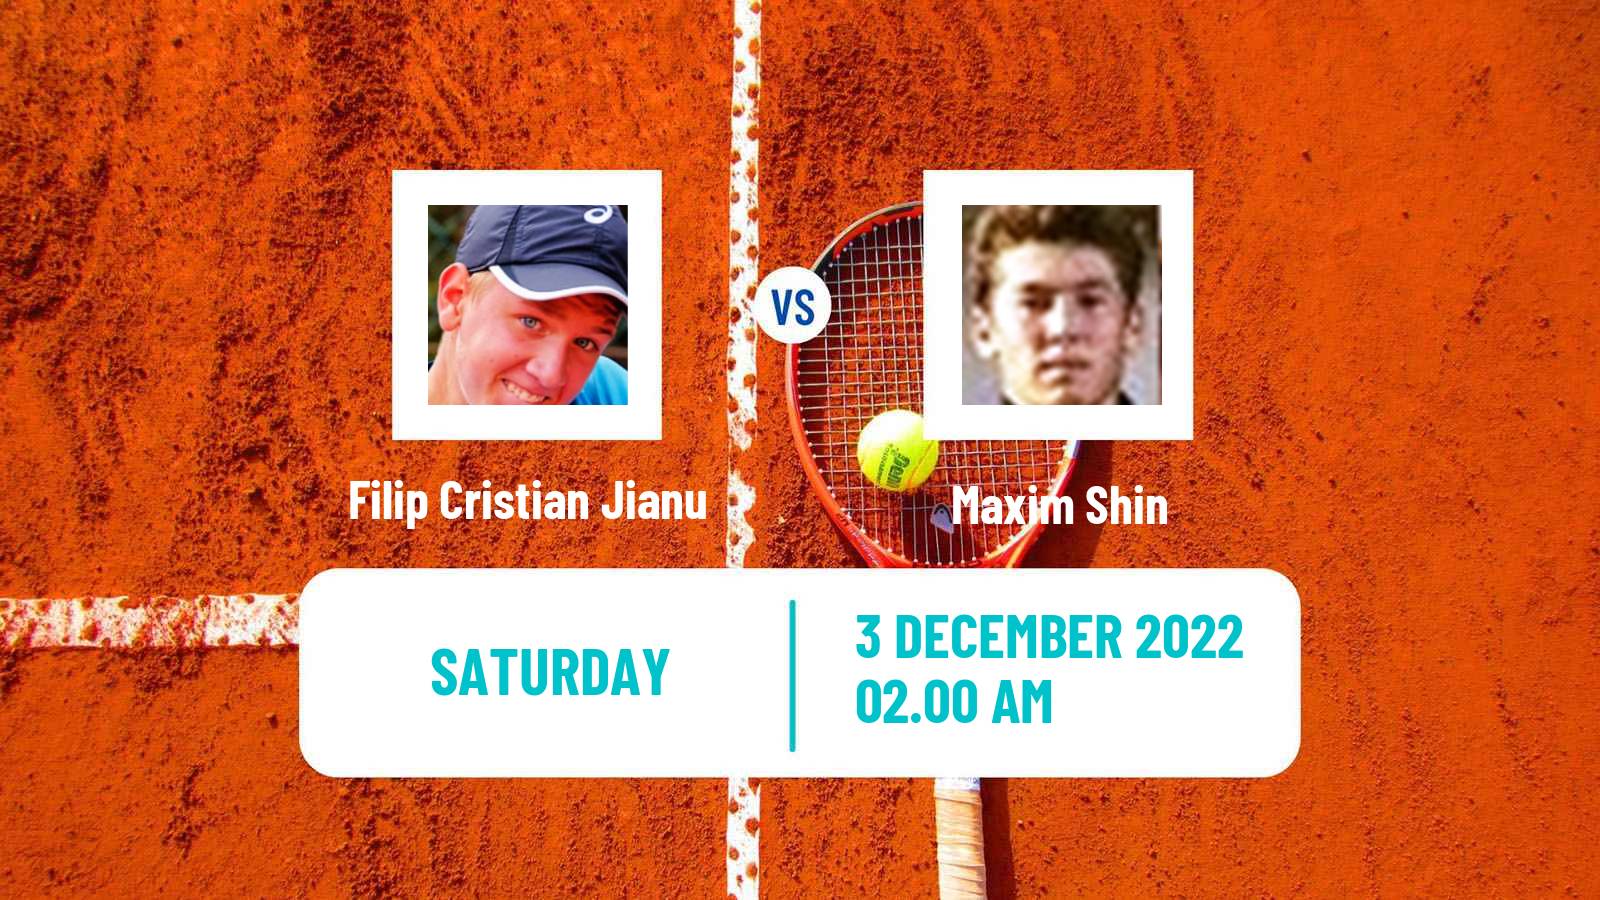 Tennis ITF Tournaments Filip Cristian Jianu - Maxim Shin